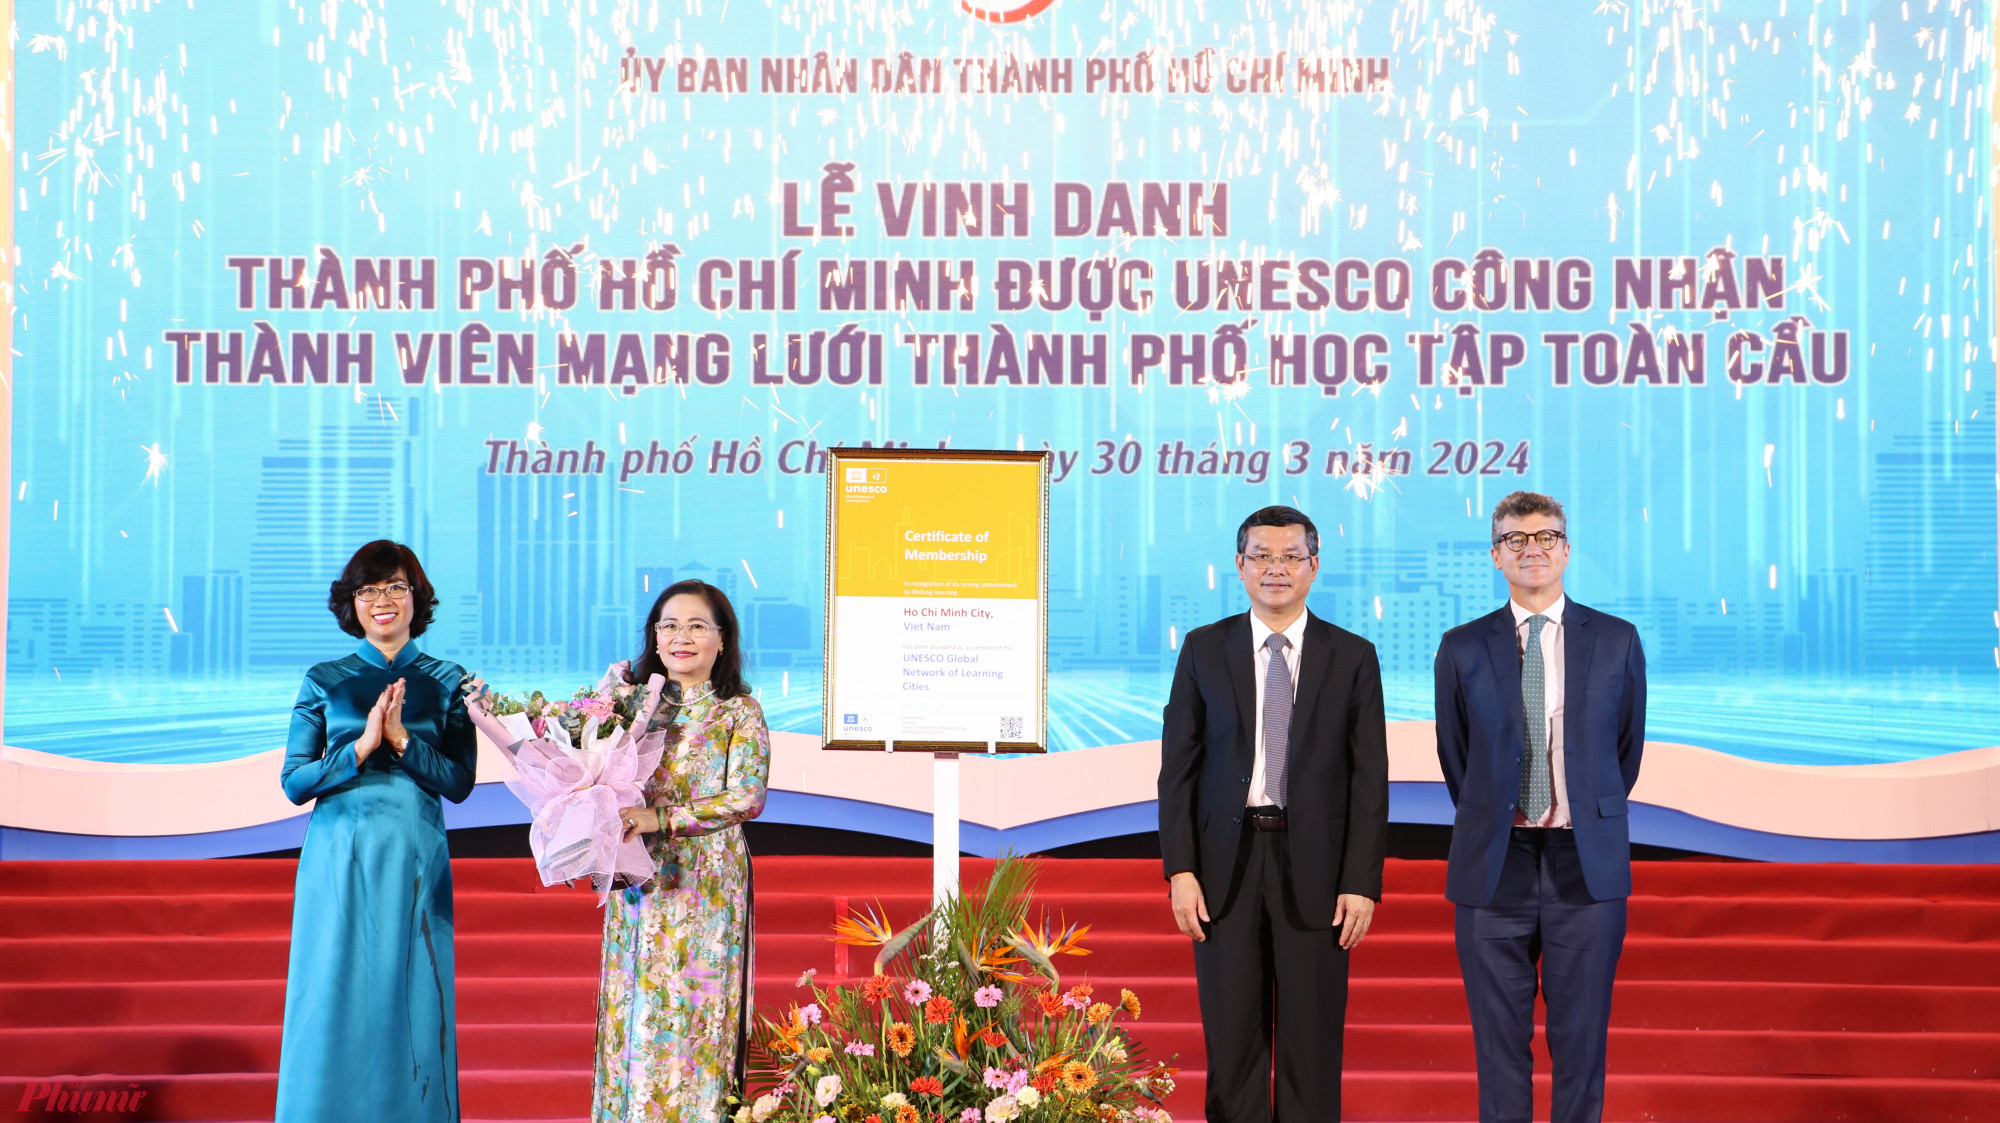 Ông Nguyễn Văn Phúc trao giấy chứng nhận cho bà Nguyễn Thị Lệ, mở ra một hành trang mới cho nền giáo dục của TPHCM